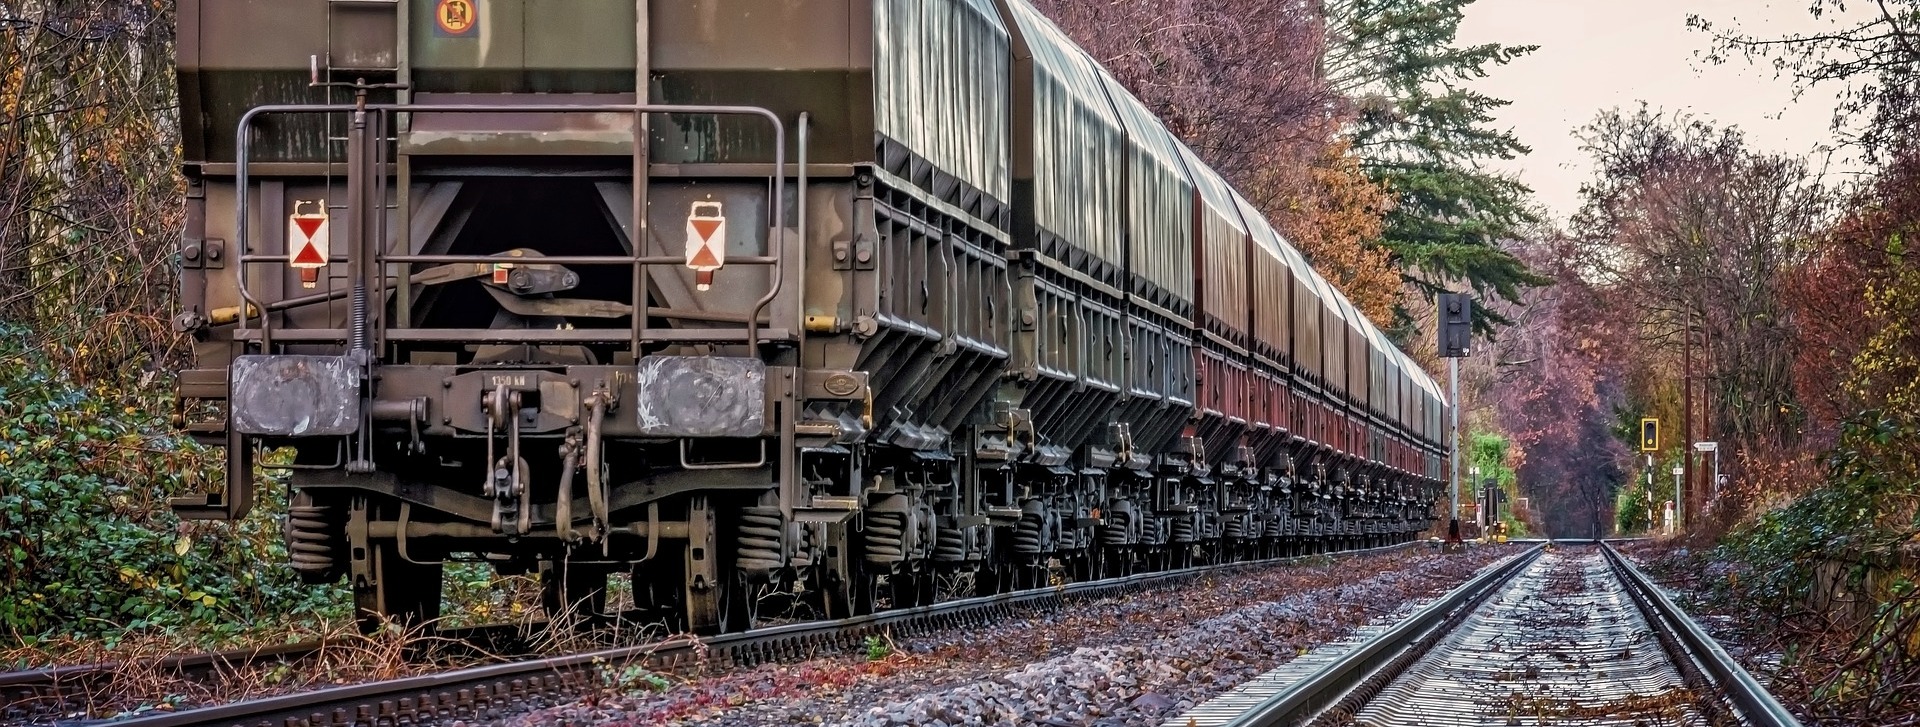 Ein Güterzug auf Gleisen von hinten rechts fotografiert.